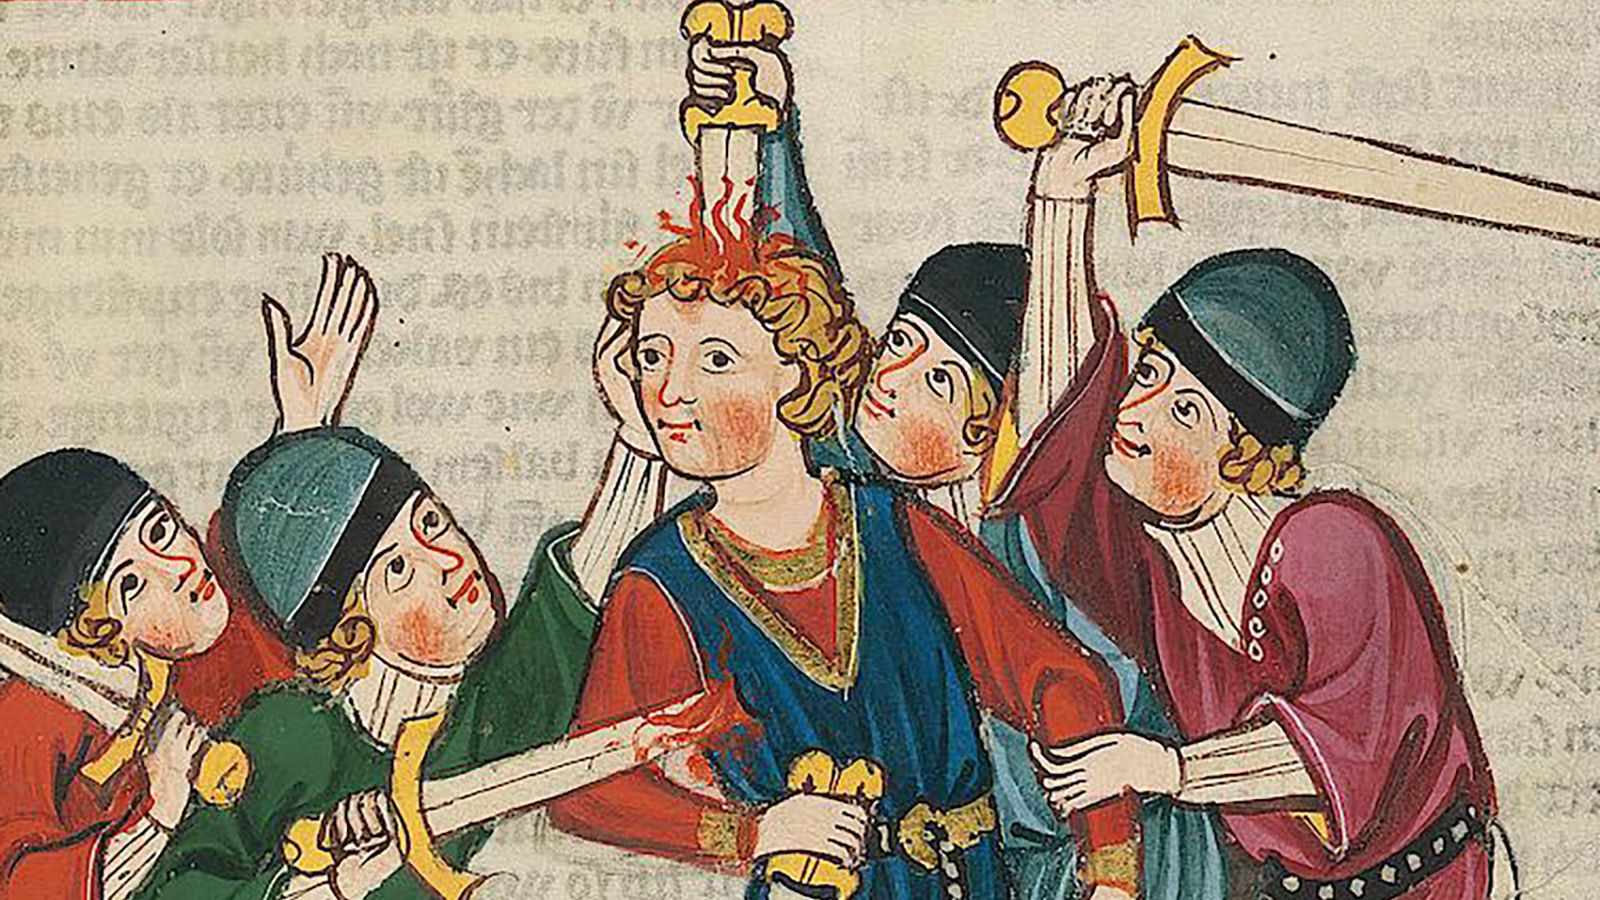 ¿Por qué el arte medieval es tan extraño? Este nuevo libro ofrece una guía de la época